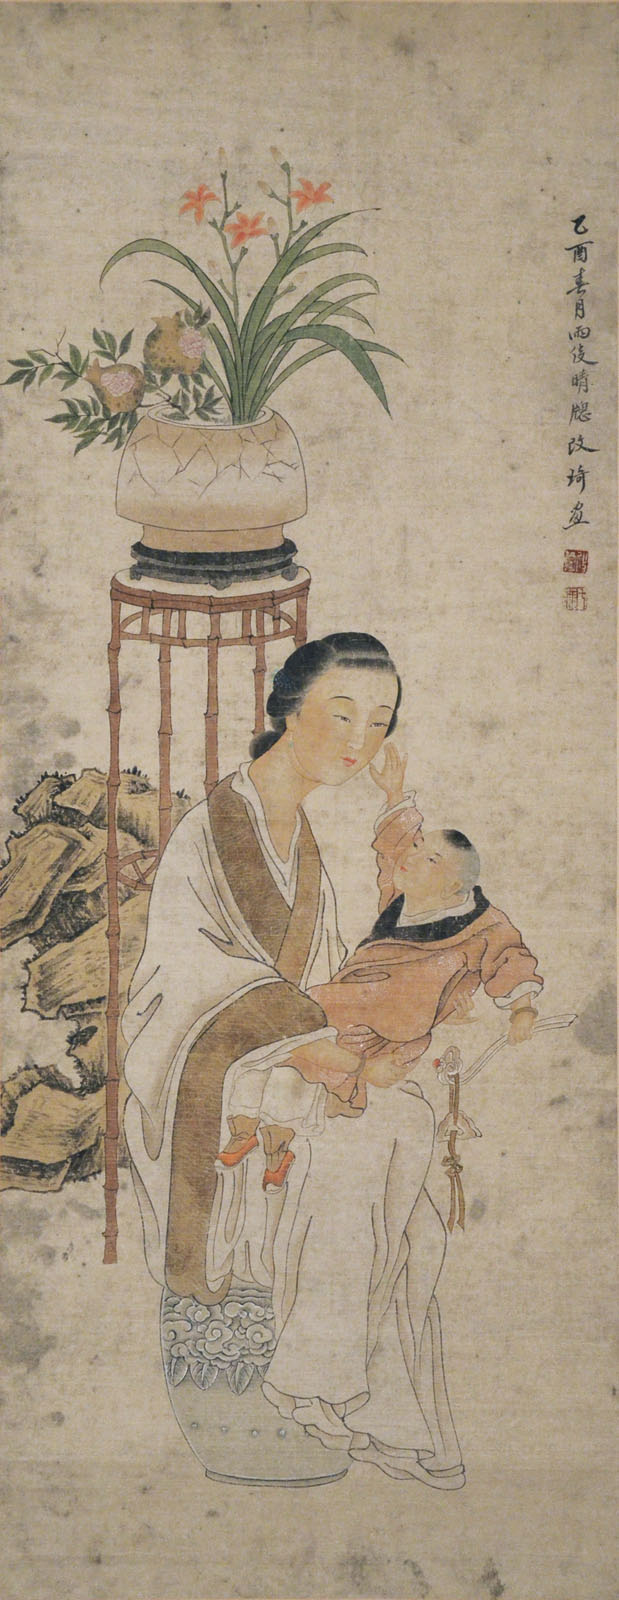 清 改琦  (1773 - 1828)  母子圖  設色水墨紙本立軸  1825 年作  款識：  乙酉春月雨後  晴牕改琦畫  鈐印：(改琦)(七薌)  Gai Qi  Qing